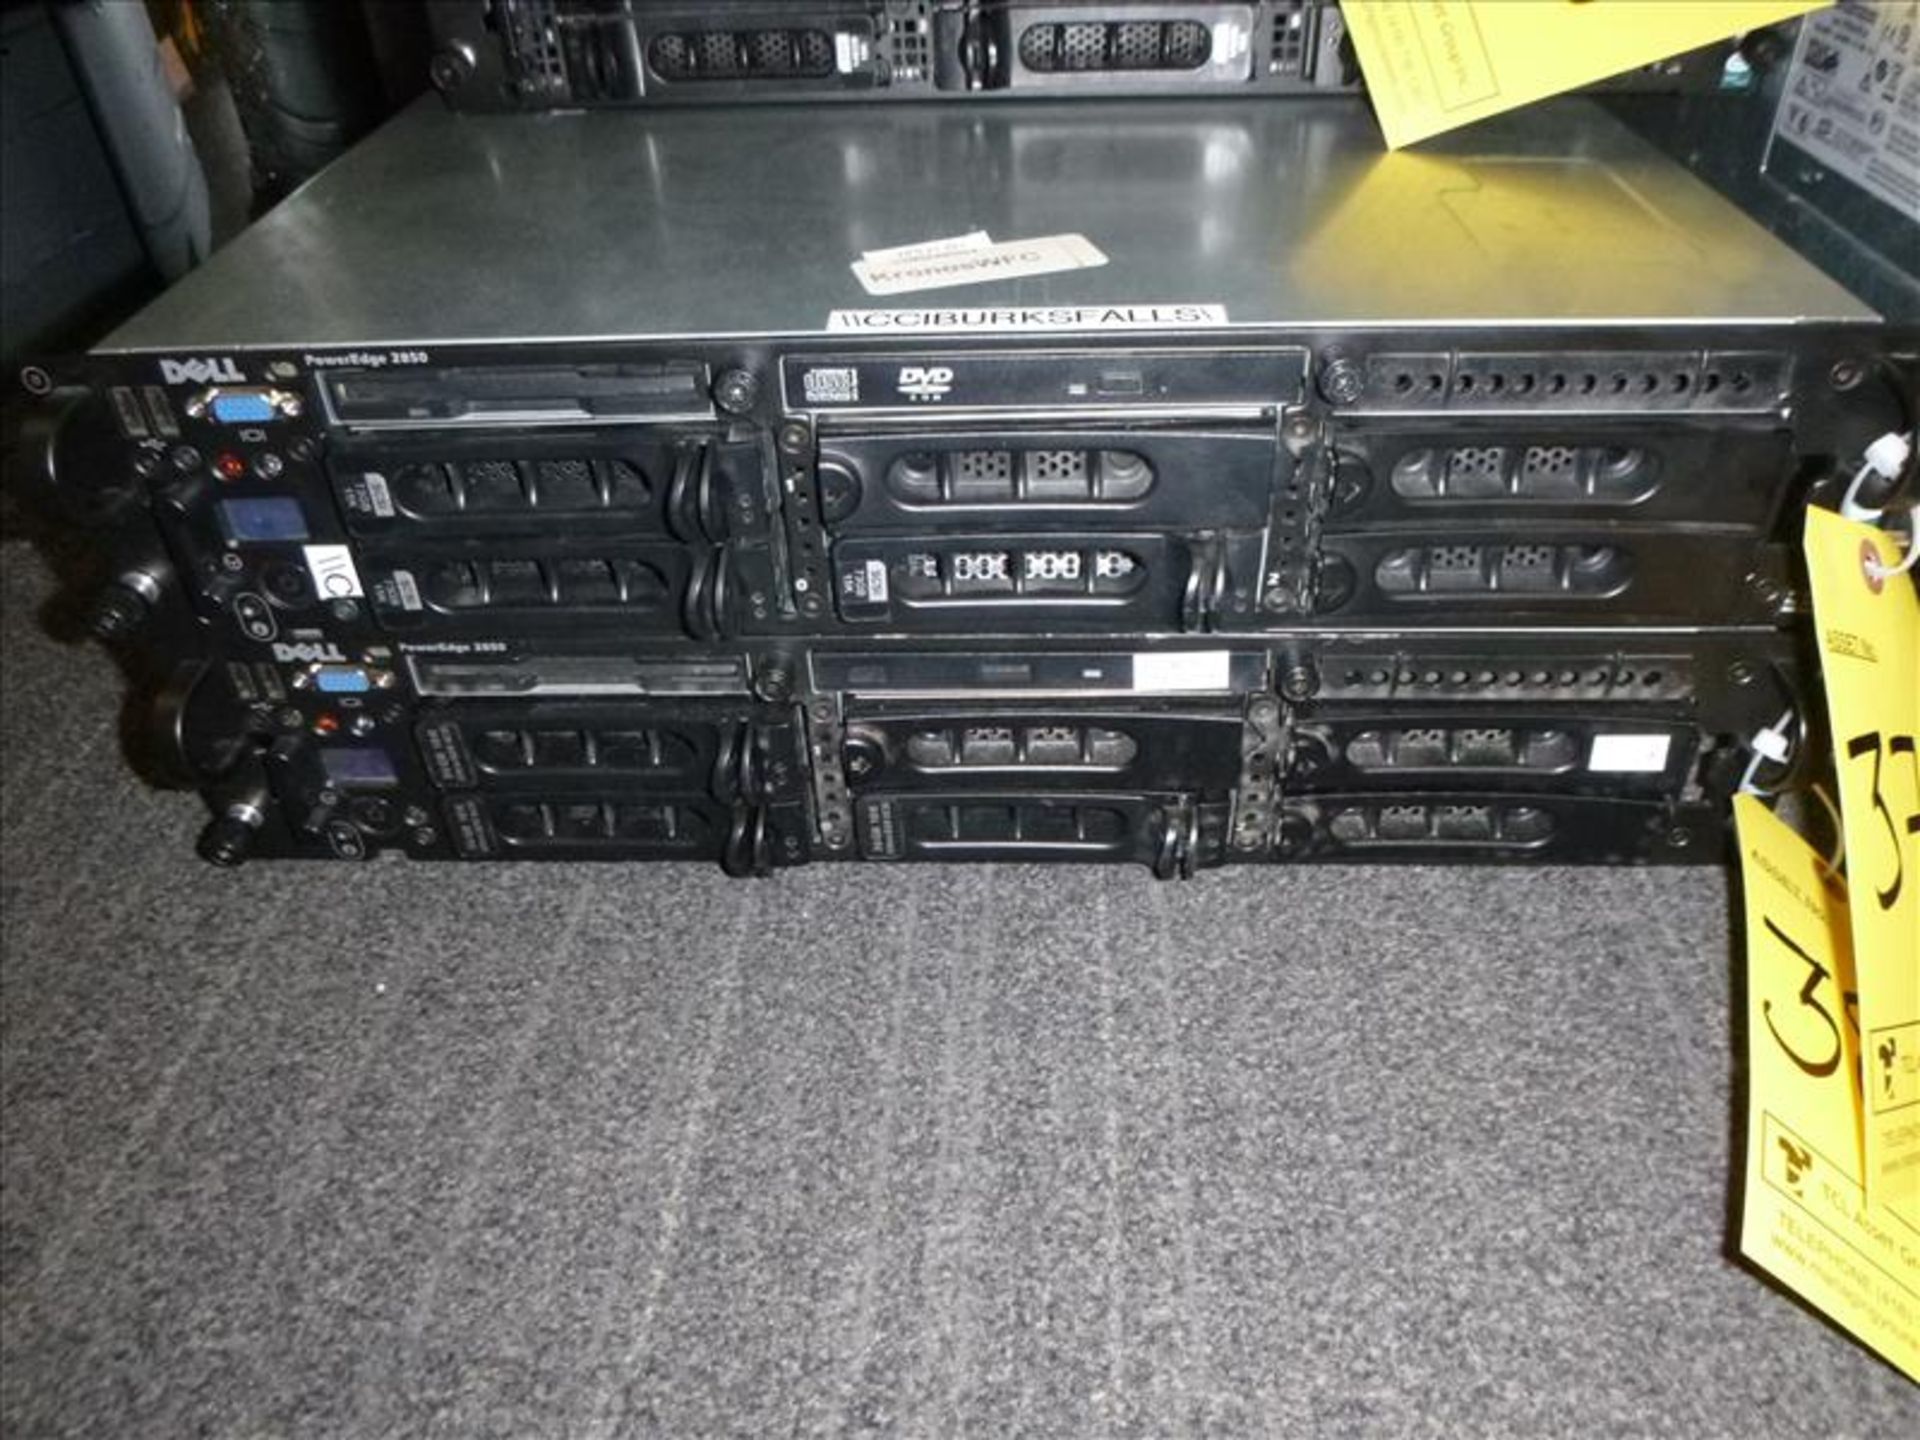 Dell PowerEdge 2850 server [1]